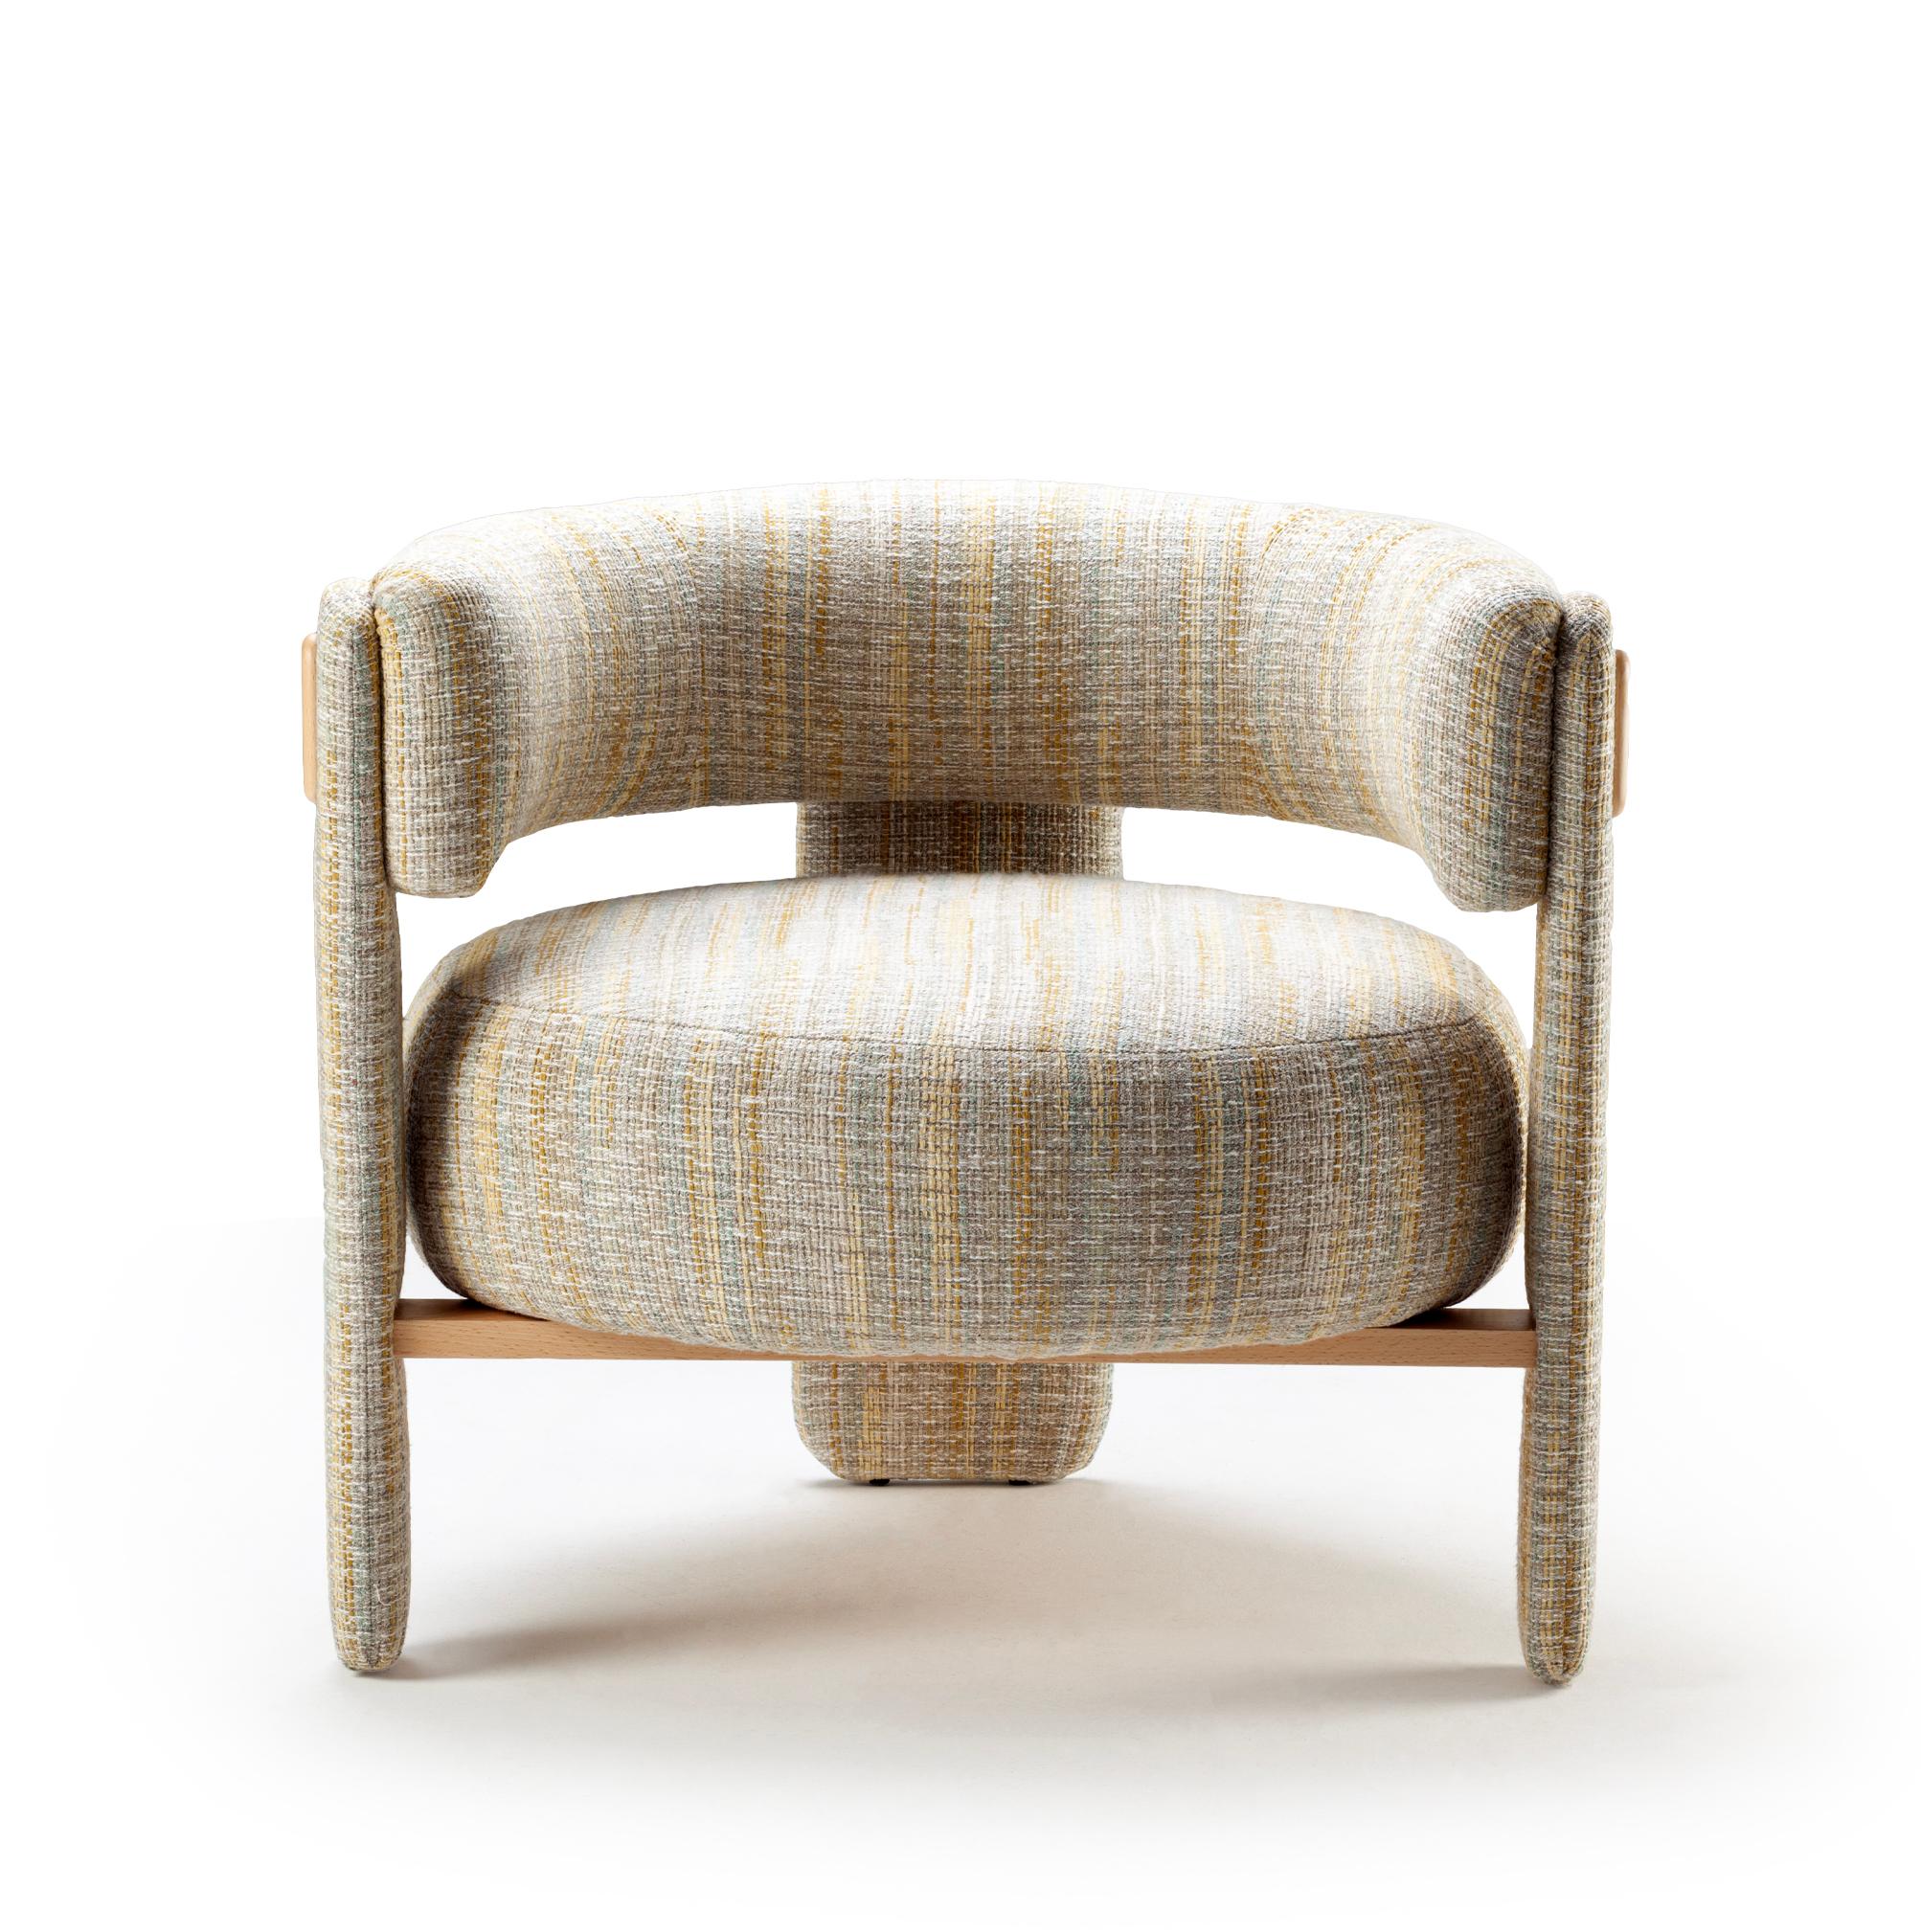 Der Sessel Choux ist proportional und skulptural, perfekt auf den menschlichen Maßstab abgestimmt. Es versammelt starke, gepolsterte Formen, die leicht auf eleganten Gestellen ruhen, die vollständig mit einer Auswahl an kuratierten Stoffen oder